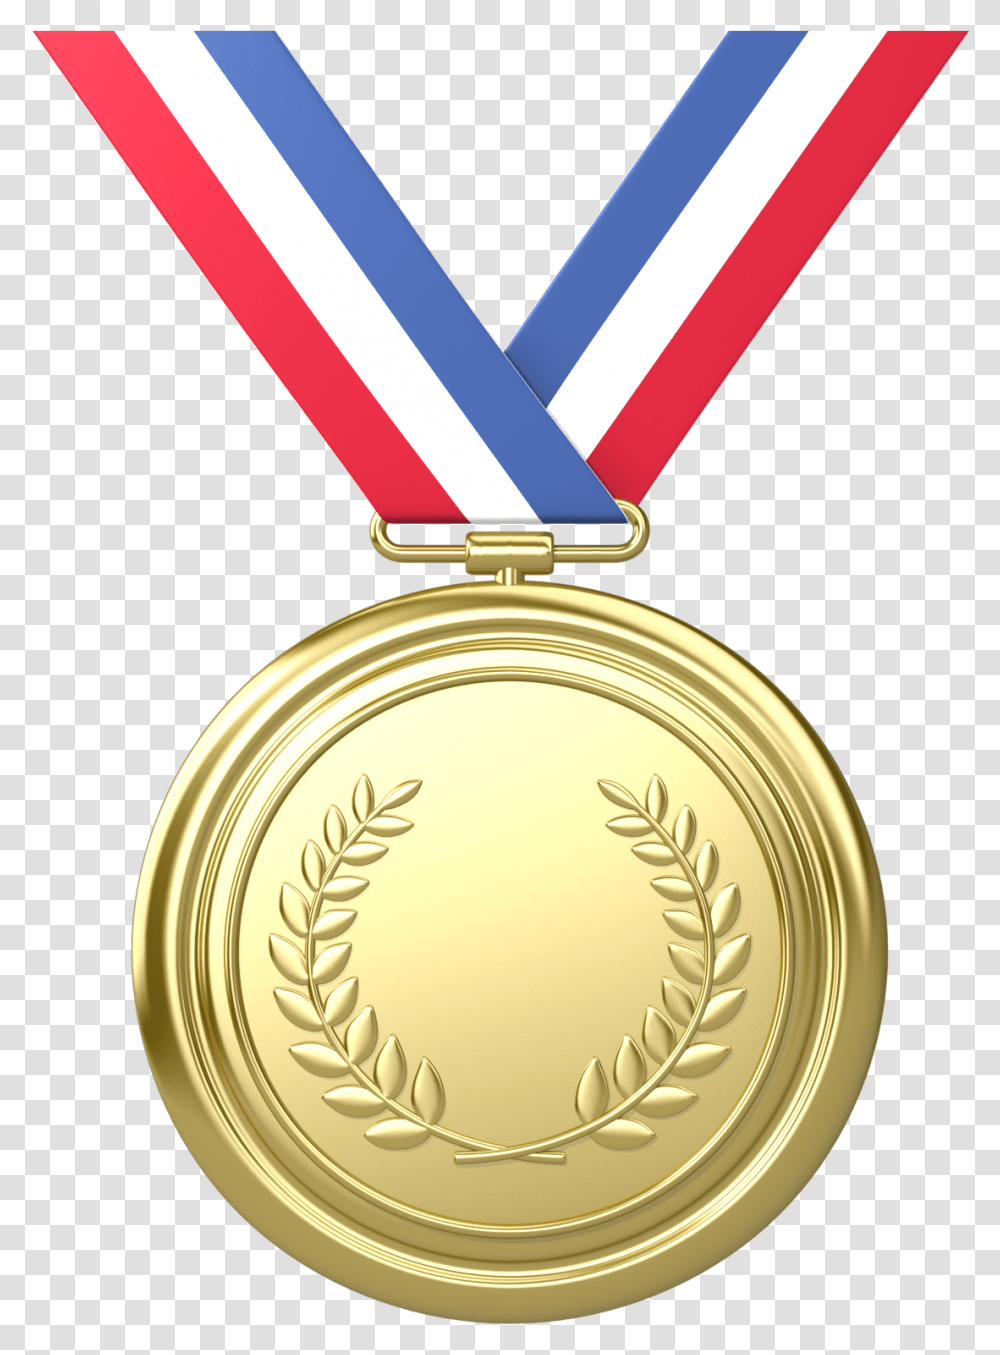 Olympic Silver Medal, Gold, Gold Medal, Trophy, Locket Transparent Png